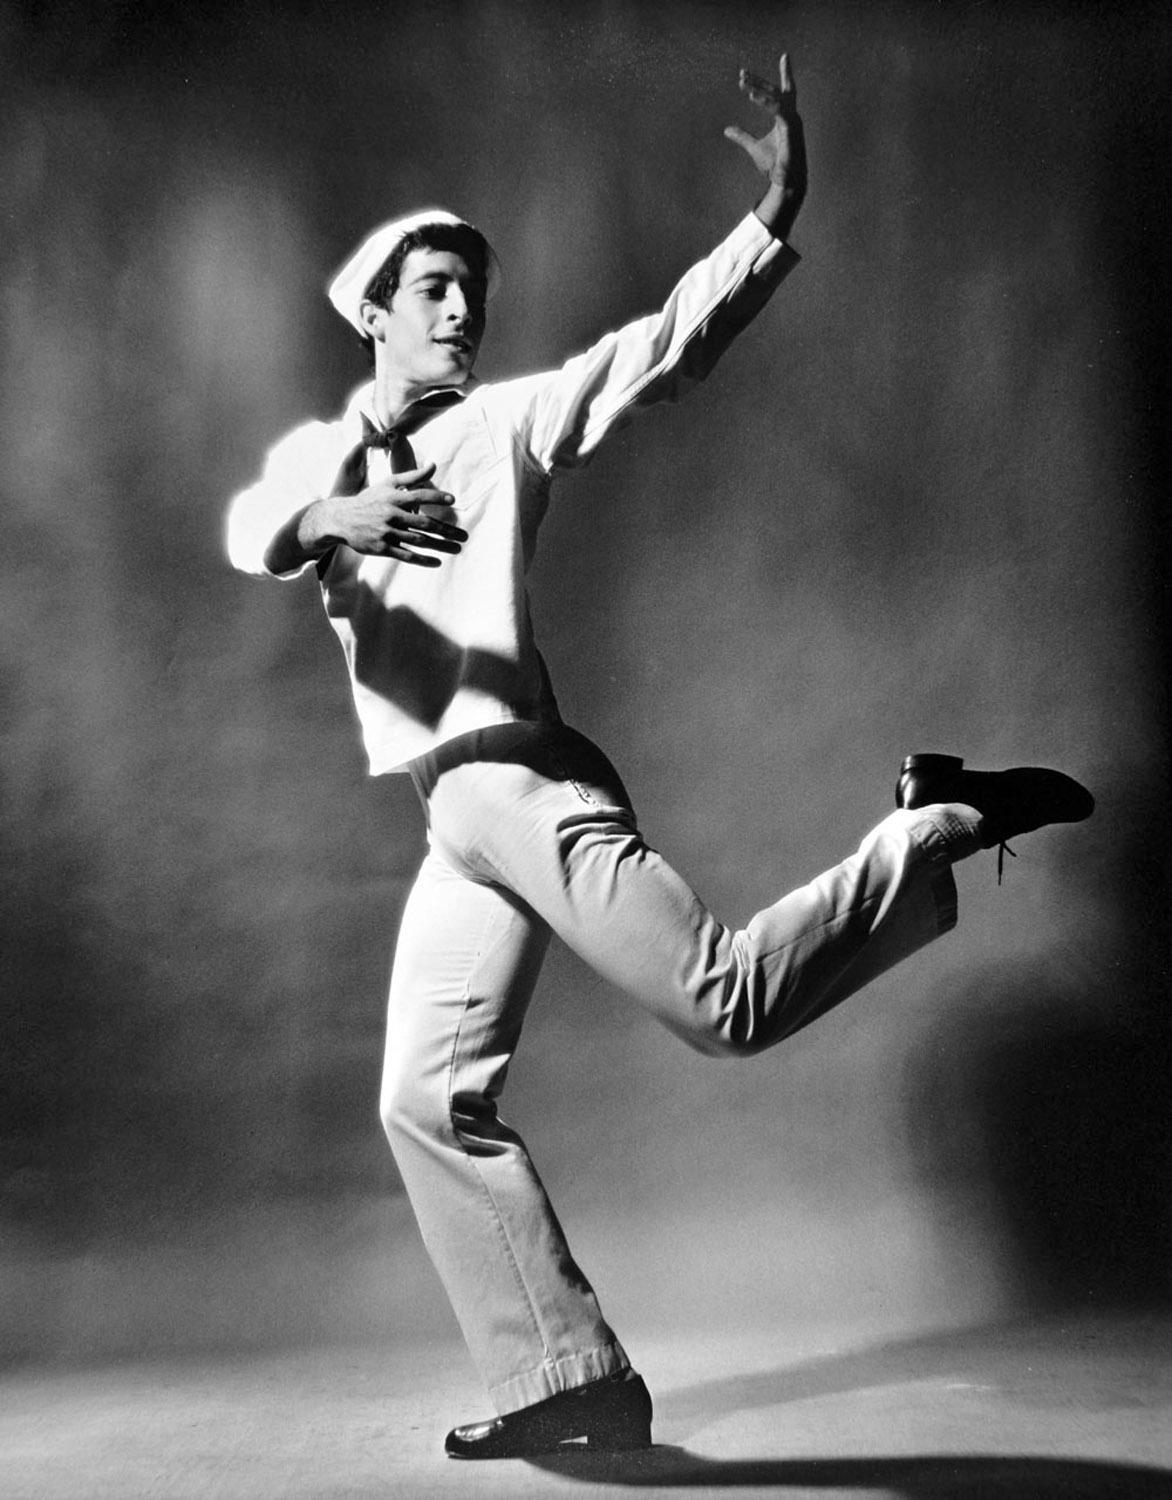 11 x 14" alte Silbergelatinefotografie des Tänzers Eliot Feld im Kostüm bei der Aufführung von "Fancy Free", 1965. Es ist von Jack Mitchell auf der Vorderseite des Drucks signiert.  Kommt direkt aus dem Jack Mitchell Archiv mit einem